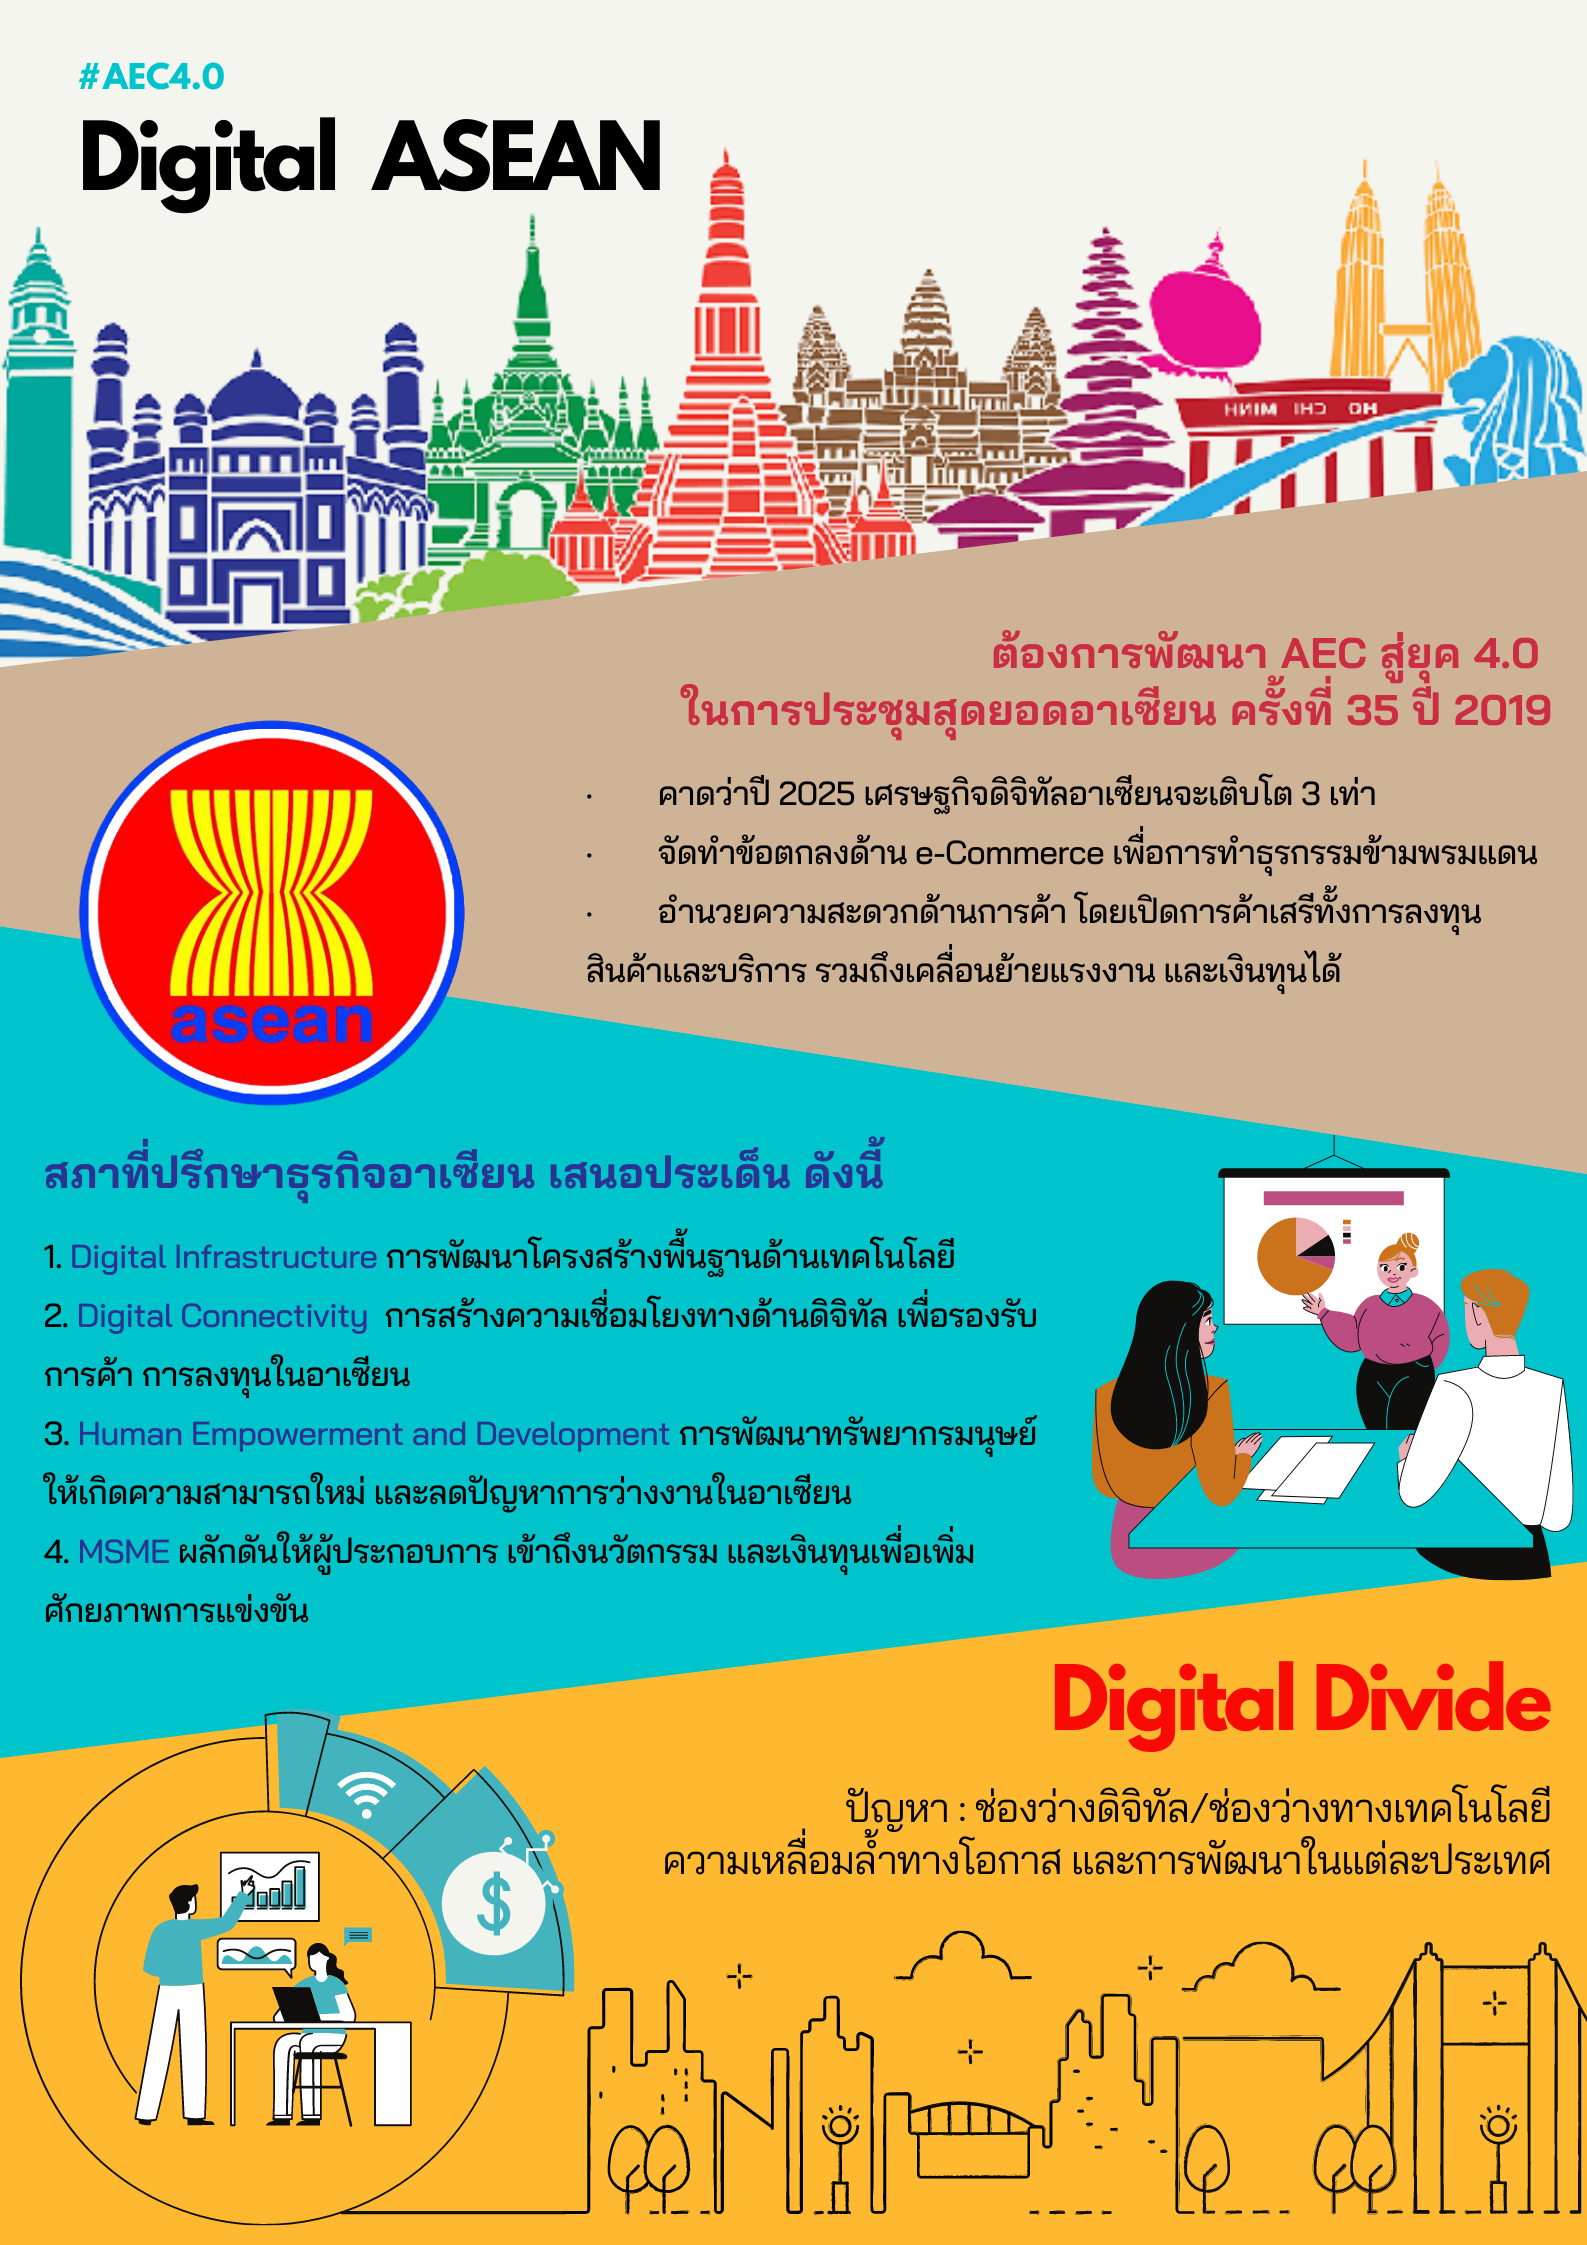 สรุปงานหัวข้อ Digital ASEAN